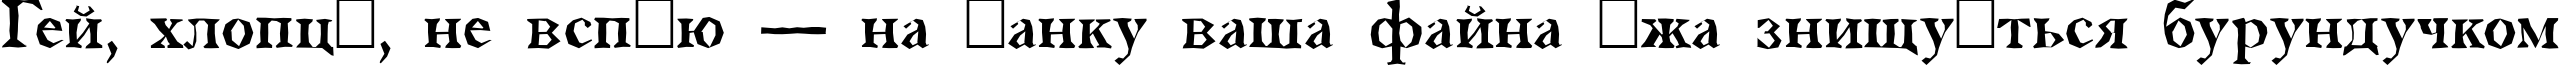 Пример написания шрифтом a_AntiqueTradyBrk текста на украинском